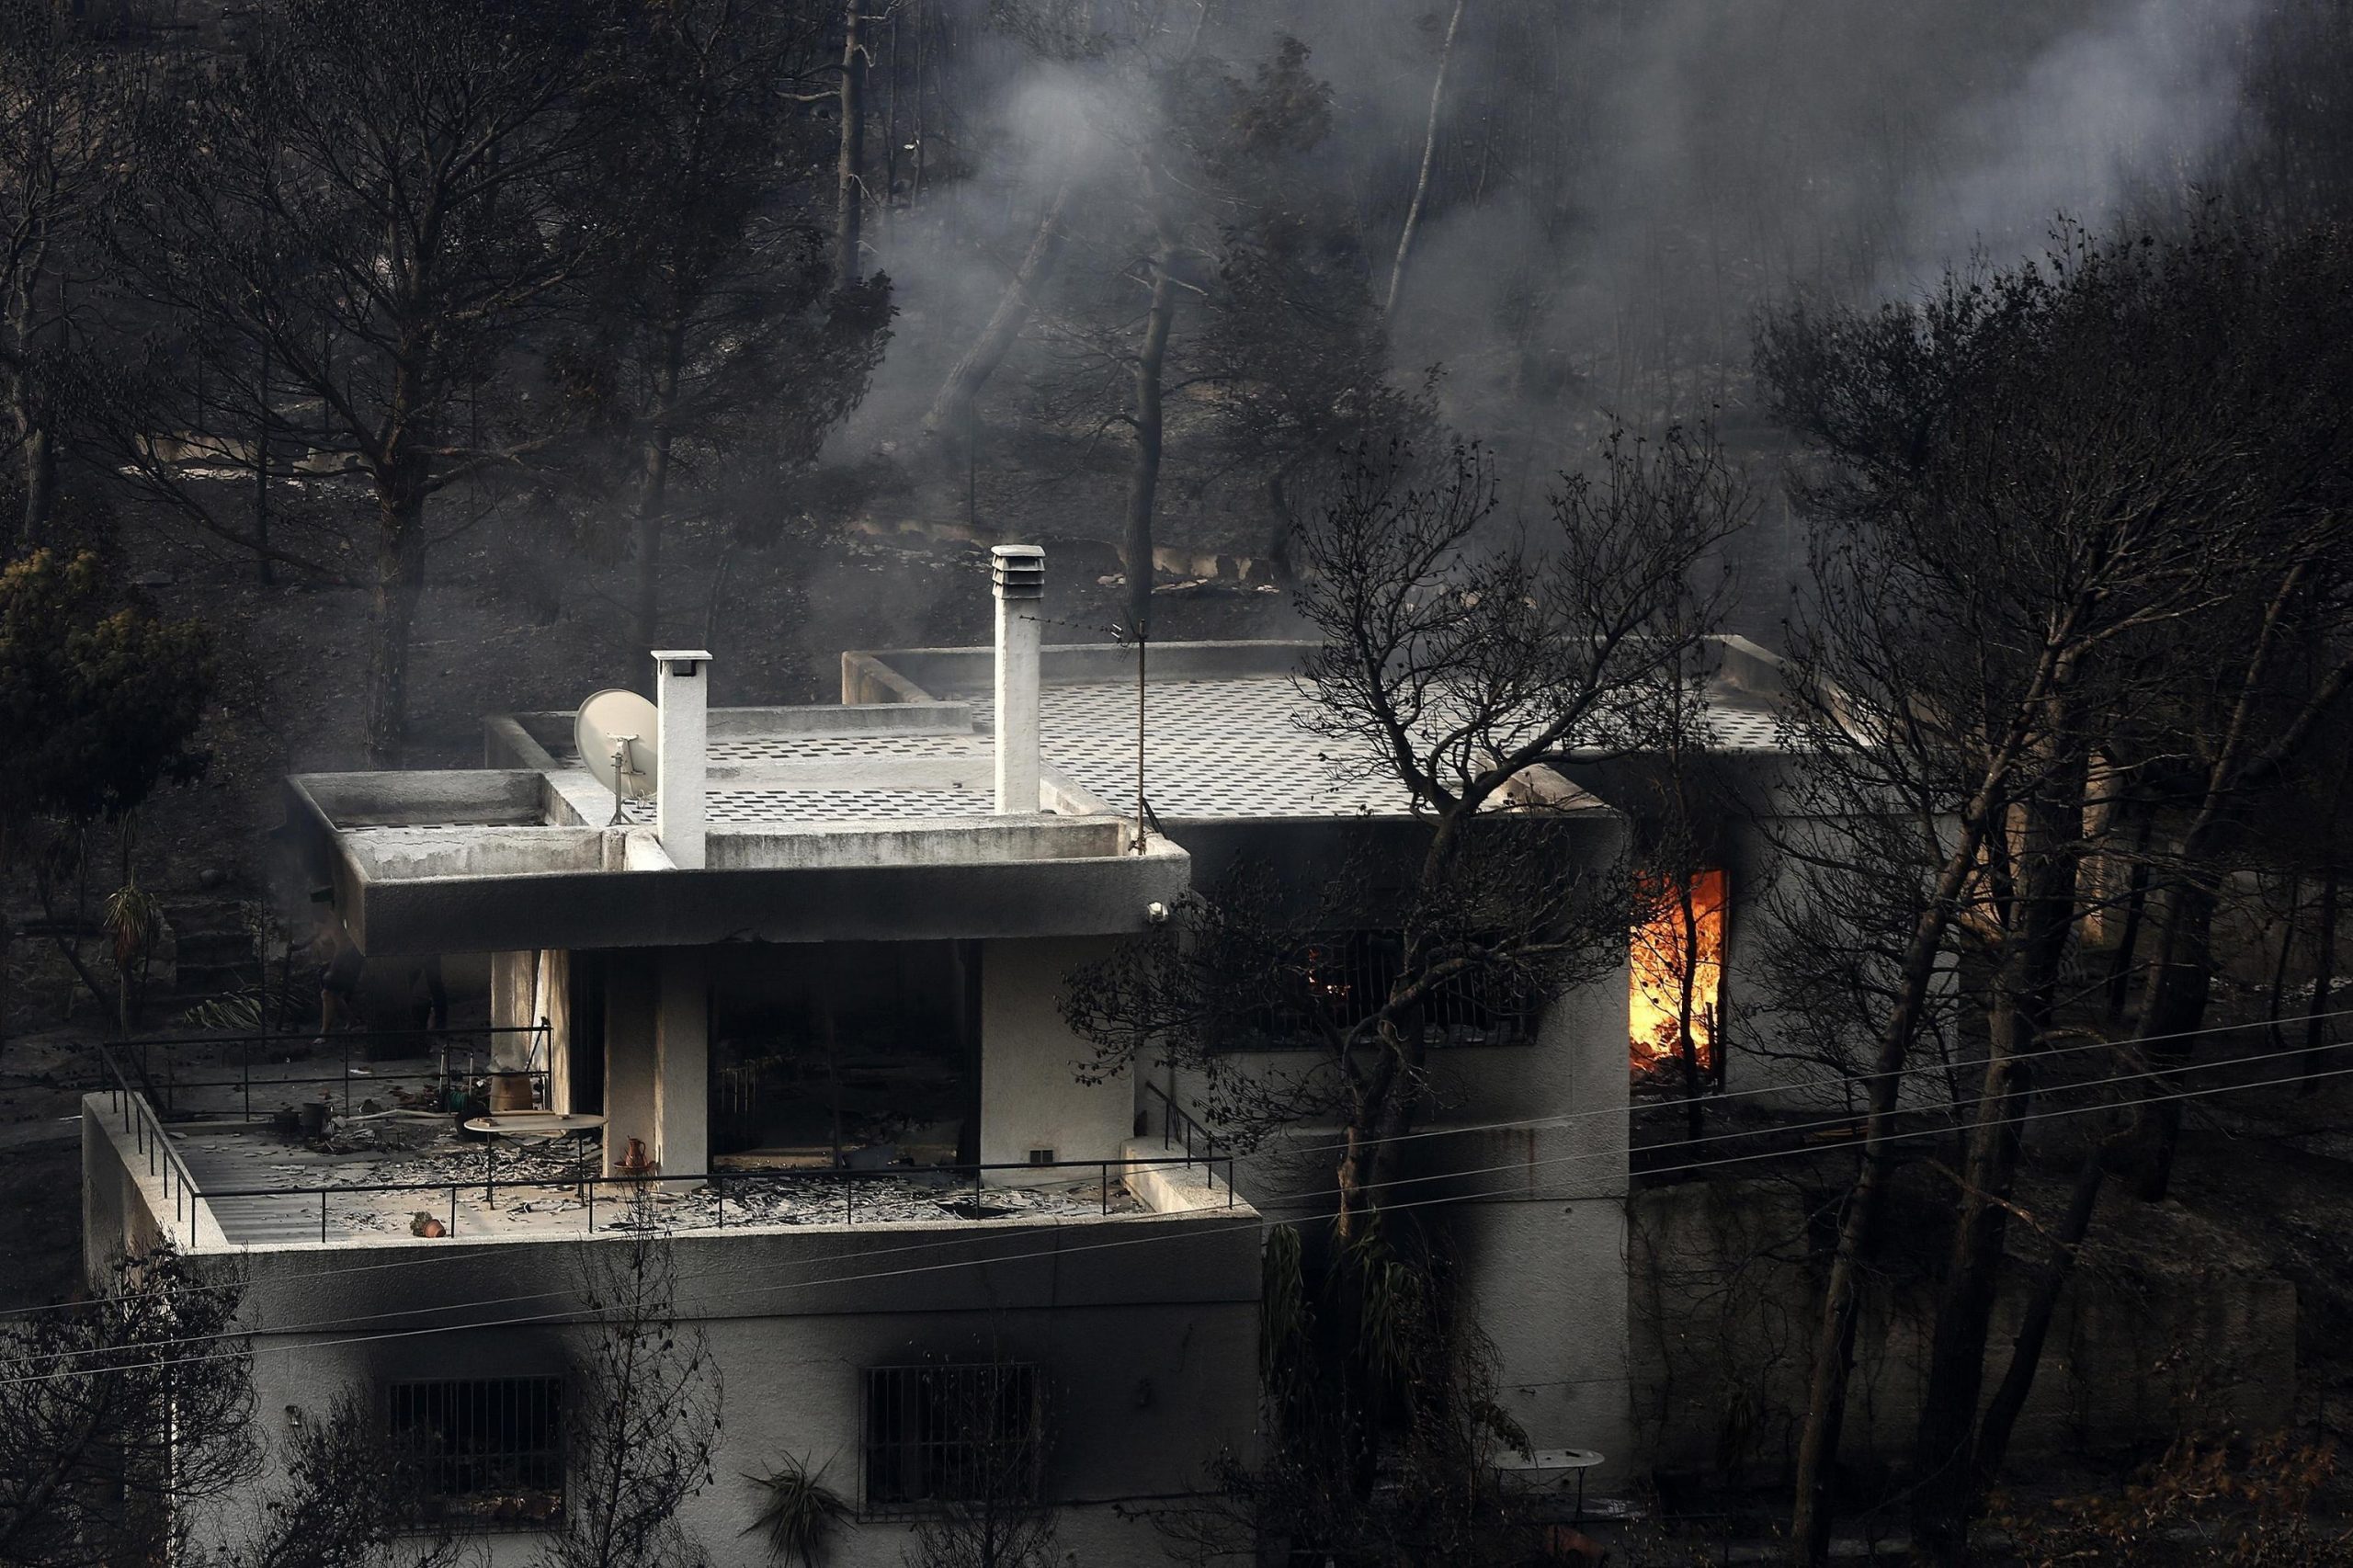 Incendio ad Atene, viaggio di nozze in fumo: sposa irlandese ricoverata, marito ancora disperso